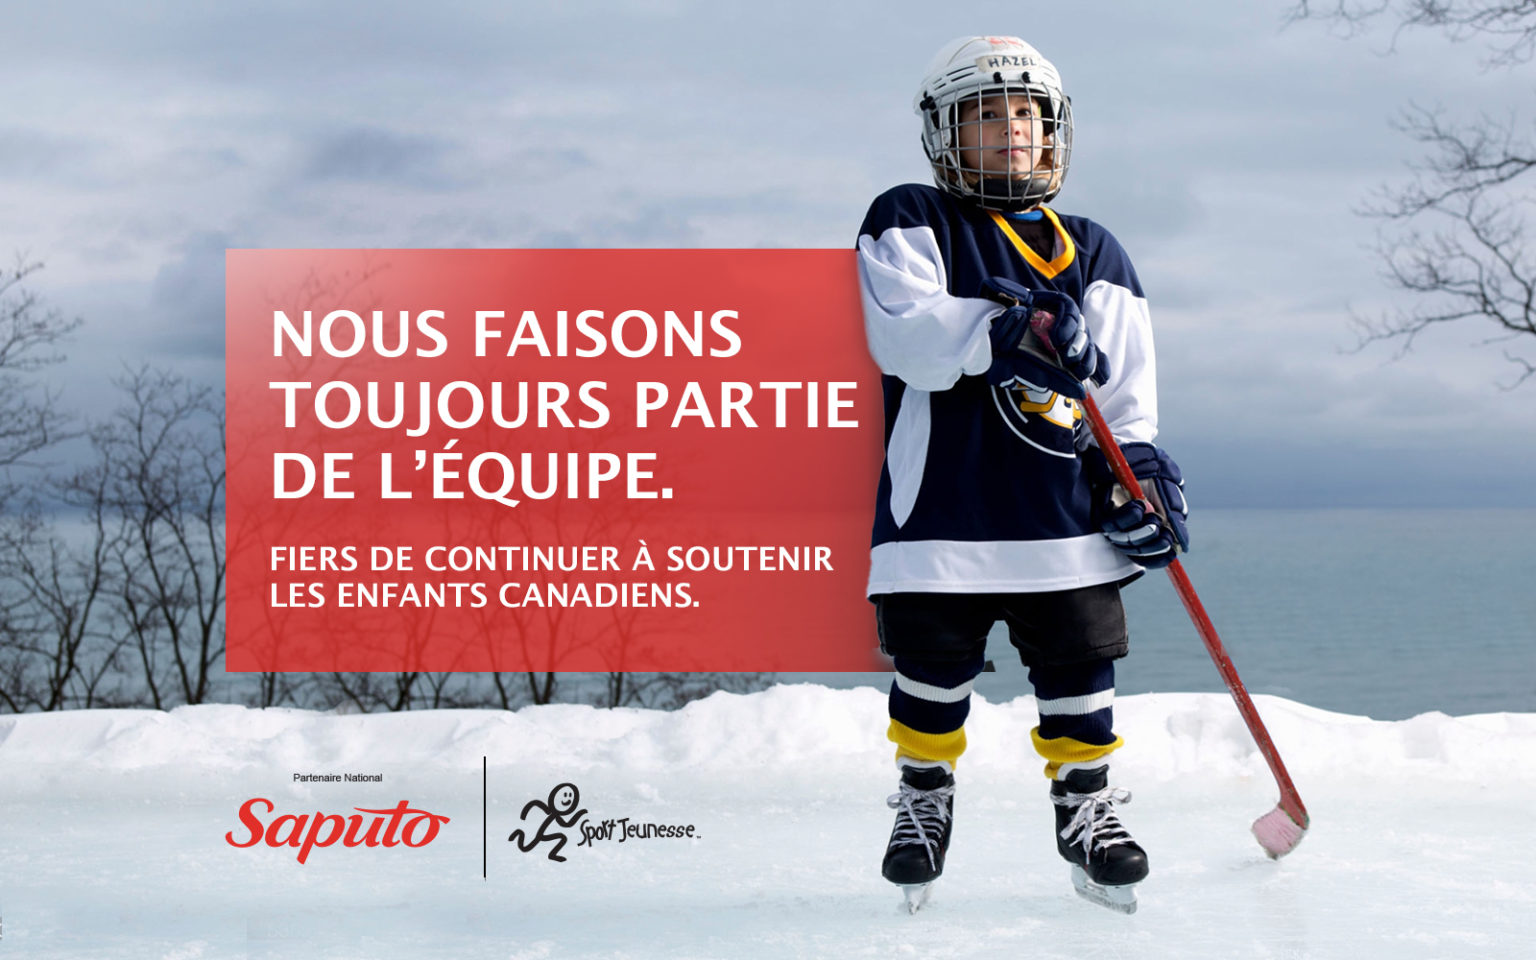 Nous sommes toujours dans l'équipe. Saputo est fier de continuer à aider les enfants canadiens à jouer.